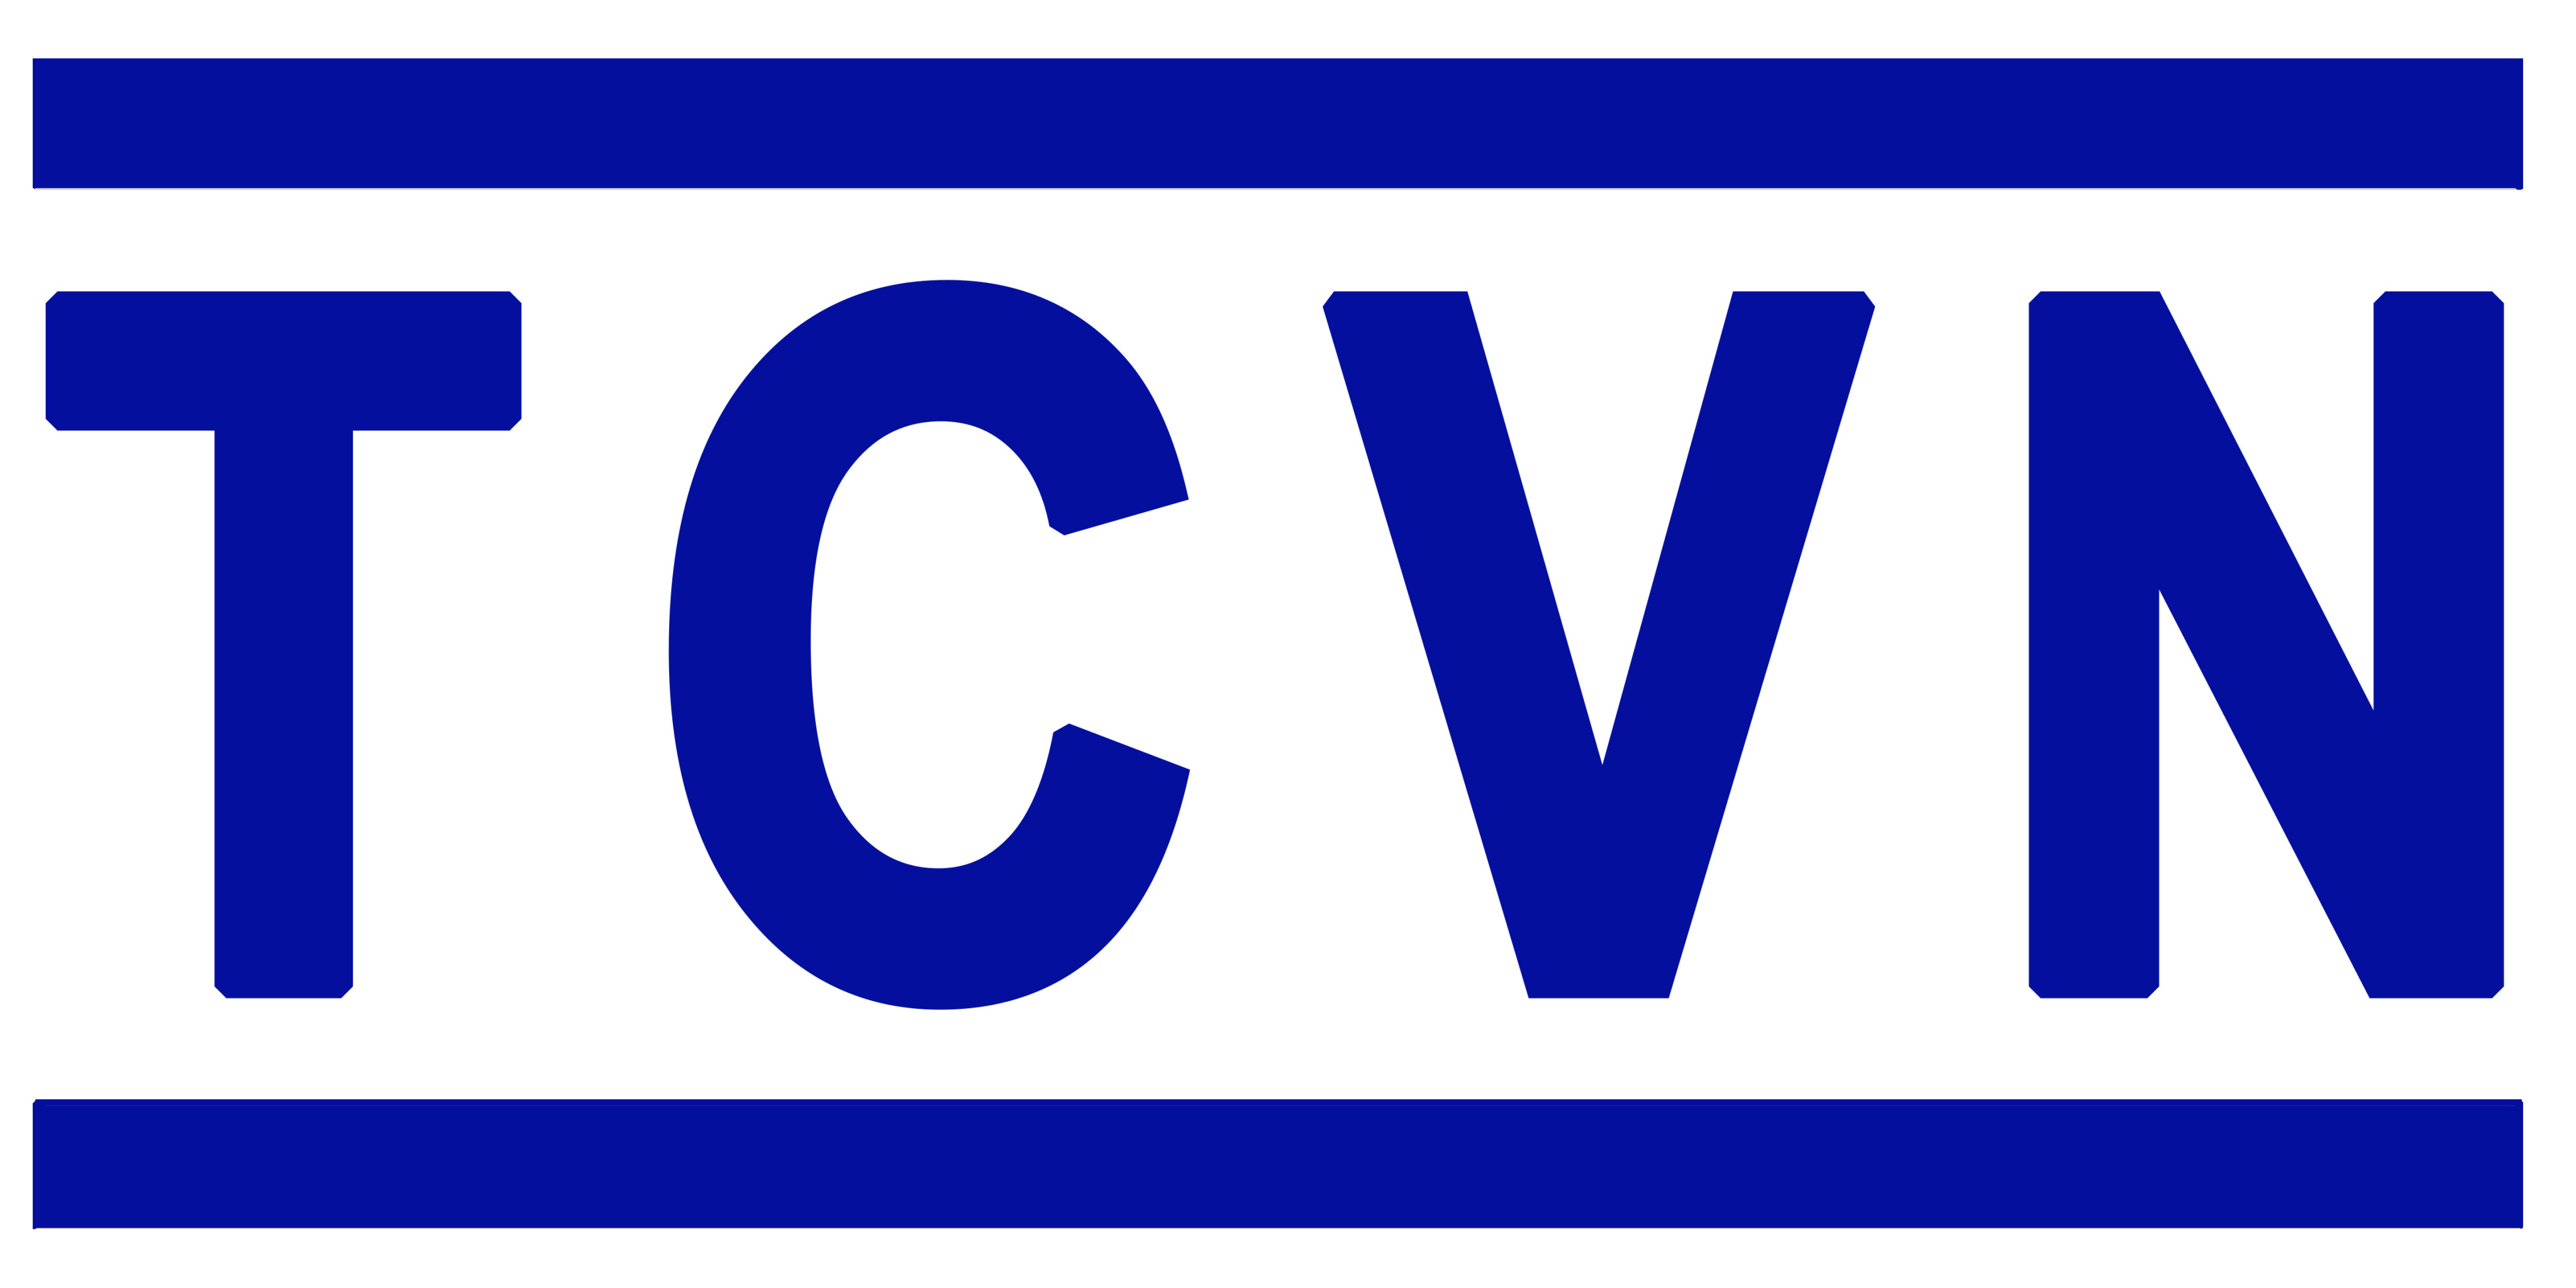 Danh mục tiêu chuẩn Quốc Gia (TCVN) công bố trong tháng 3 năm 2019